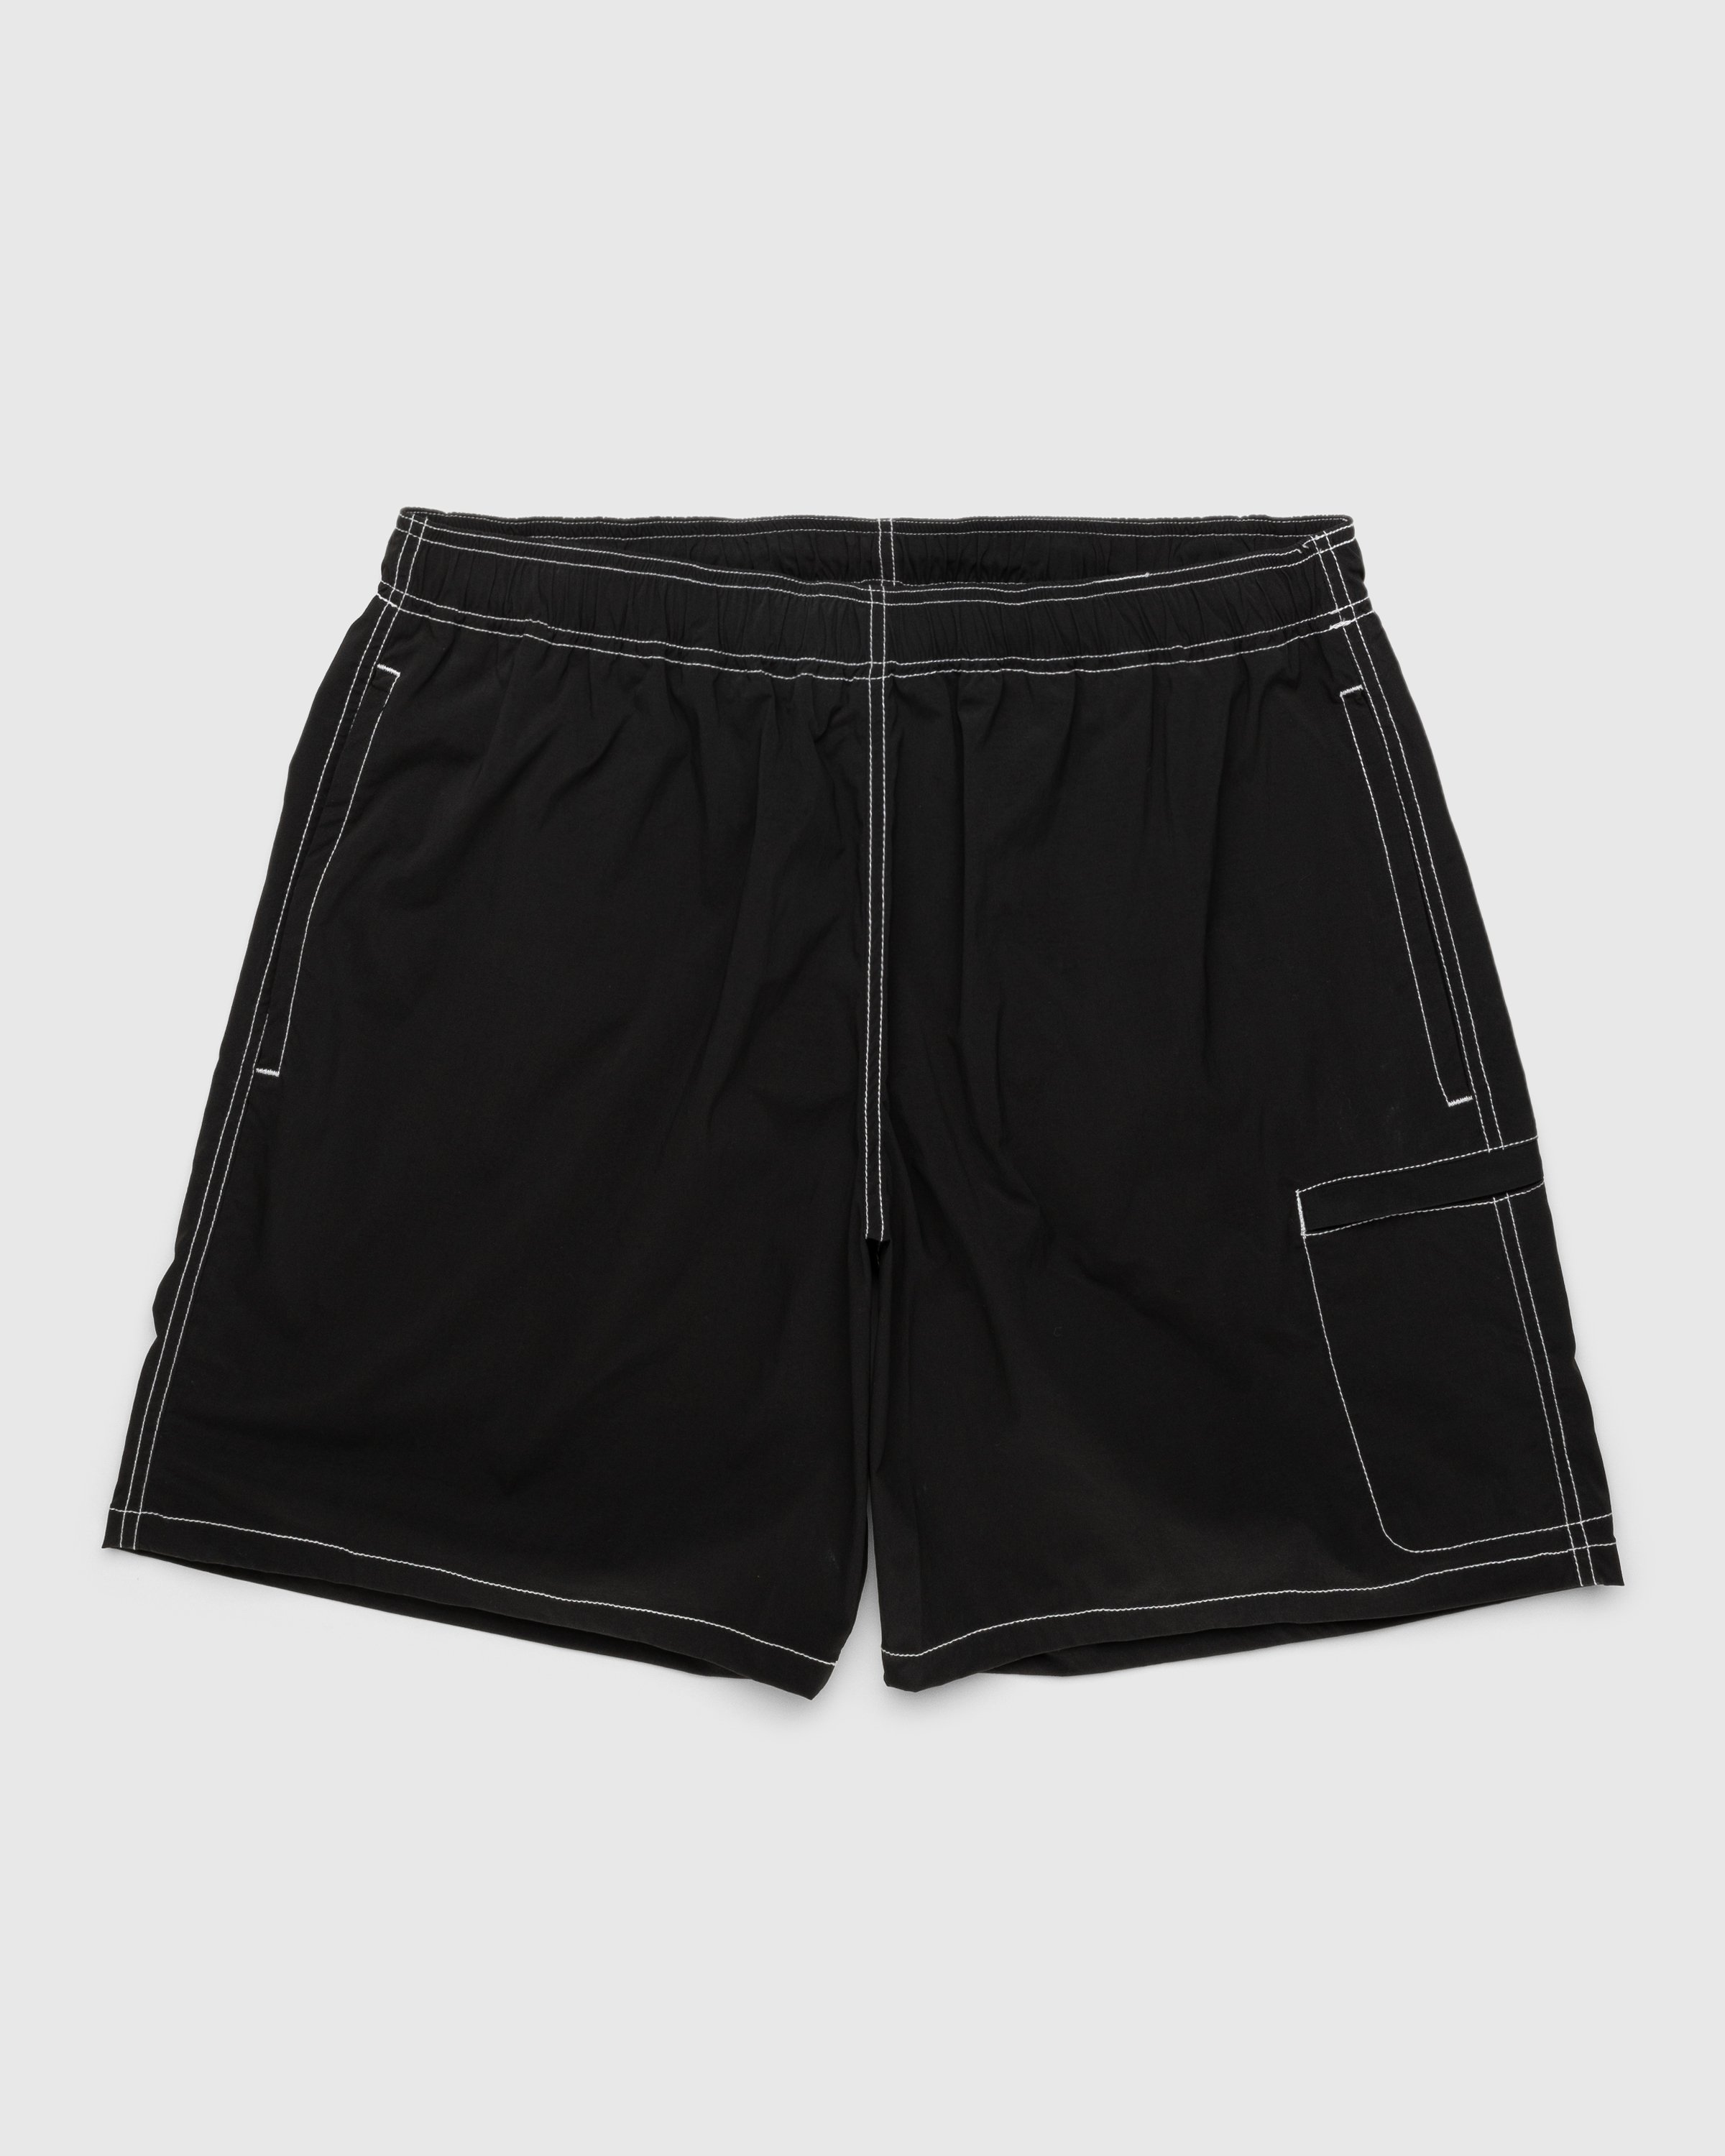 Highsnobiety - Side Cargo Shorts Charcoal Black - Clothing - Black - Image 1